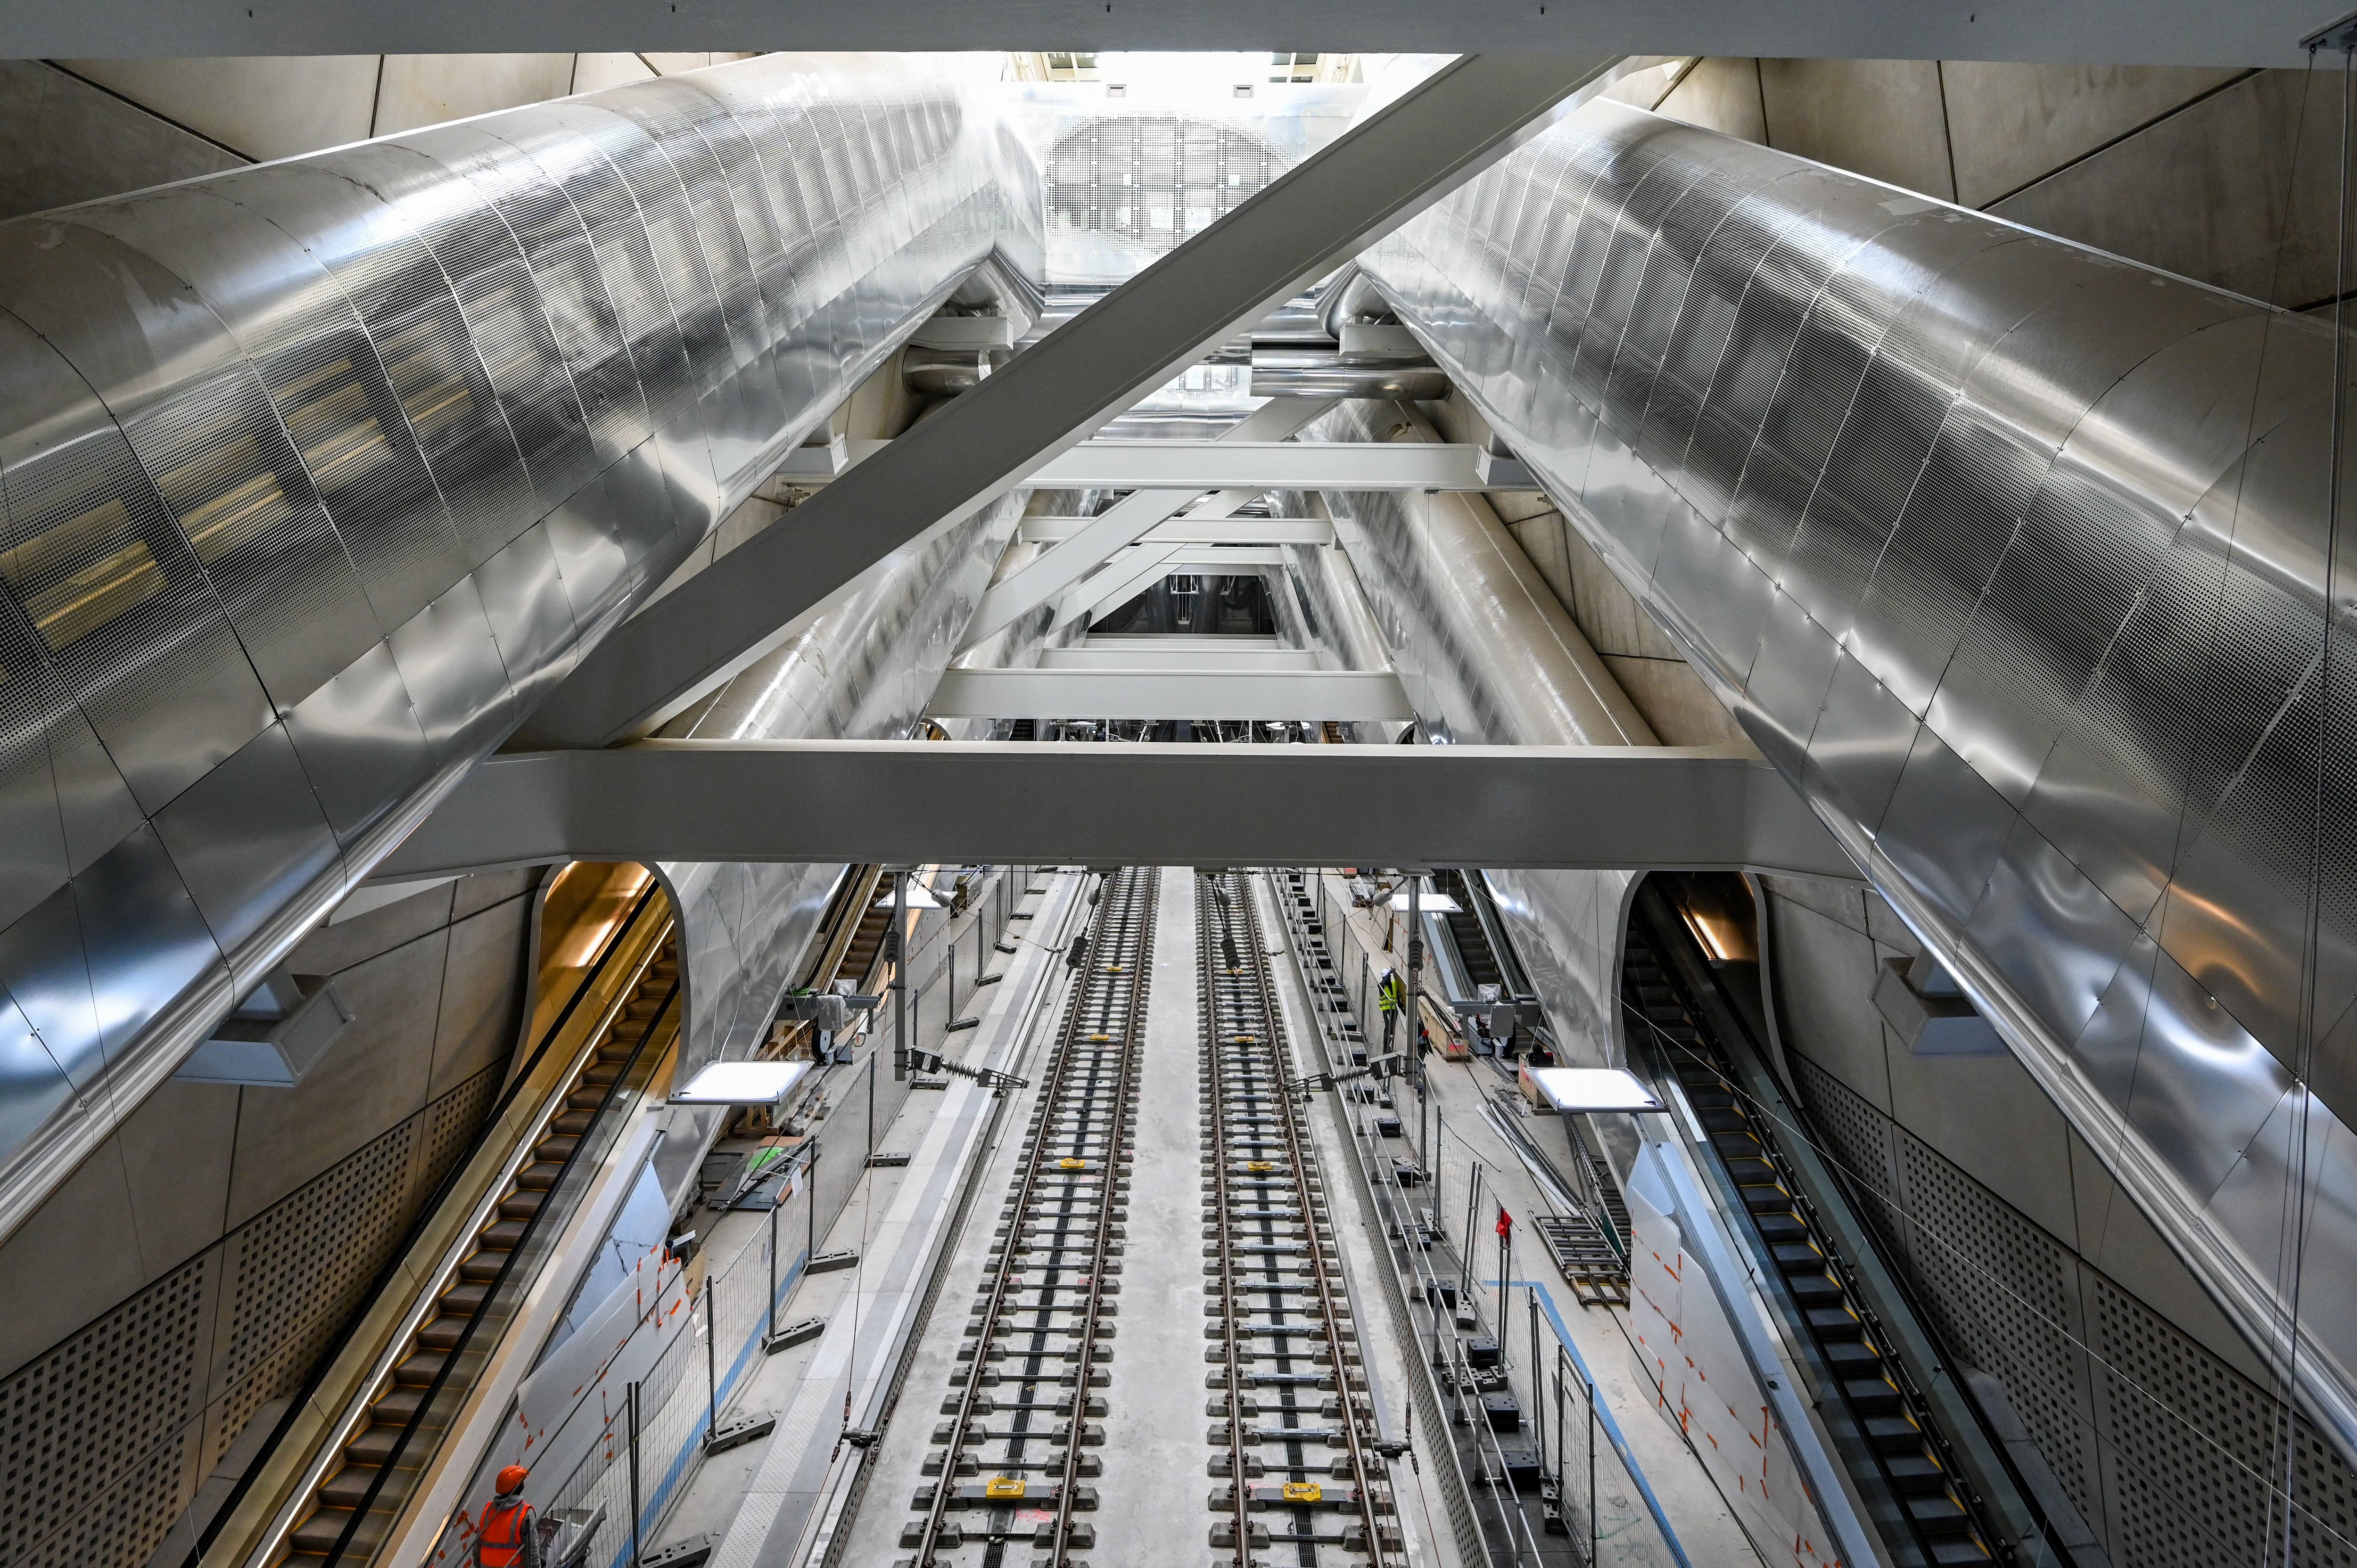 La nouvelle gare Porte-Maillot - Palais-des-Congrès (XVIIe) ouvre au public le lundi 6 mai, entre 10 heures et 16 heures. Photo direction Projet Eole - SNCF Réseau